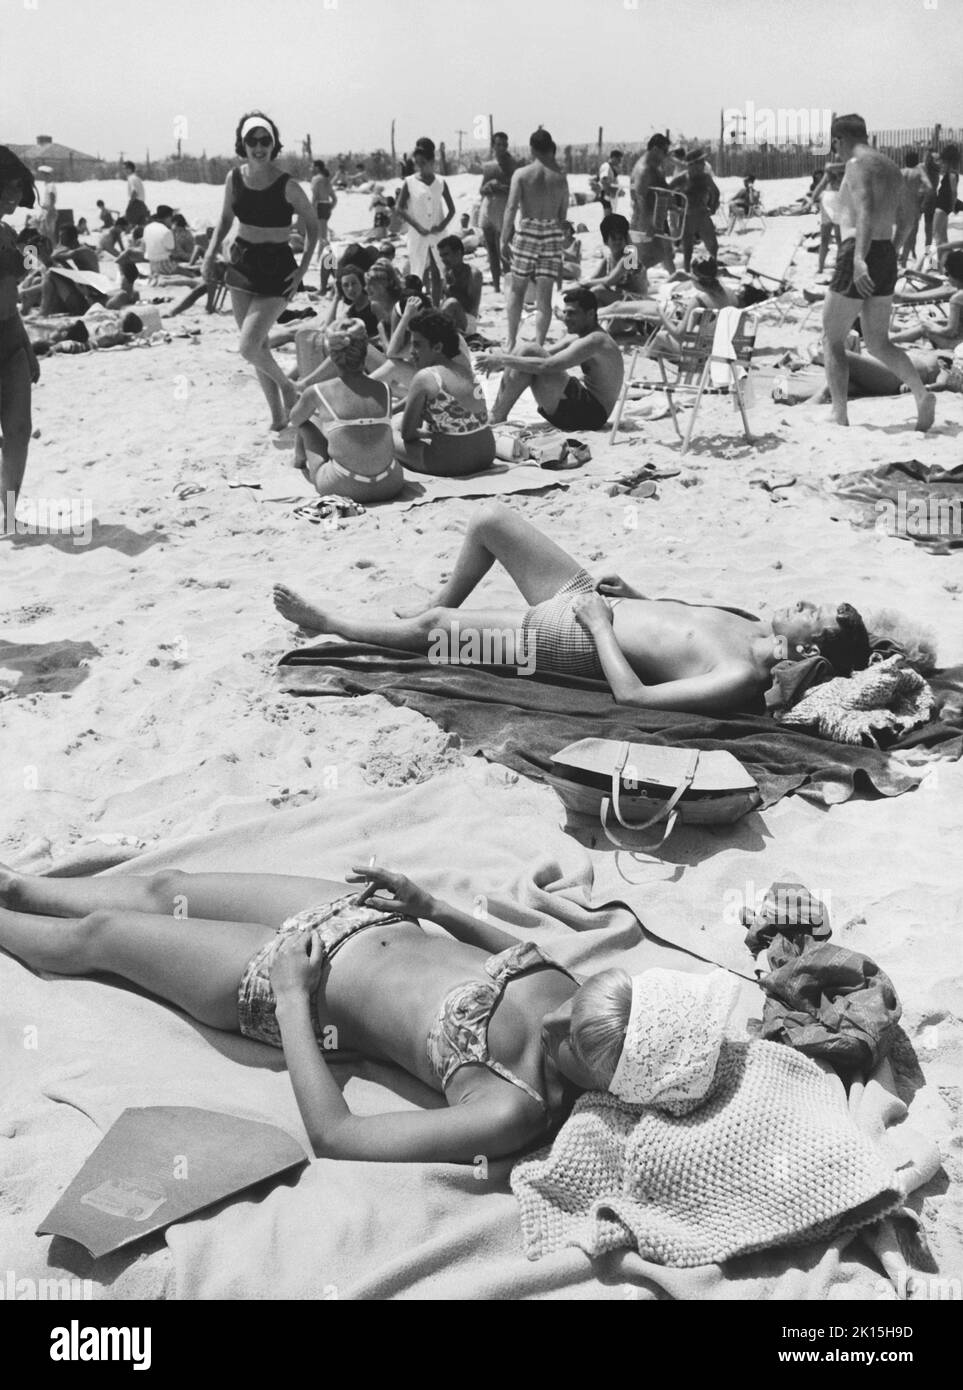 Les personnes qui bronzer sur la plage en 1963.Notez le réflecteur solaire dans le coin inférieur gauche de la photo. Banque D'Images